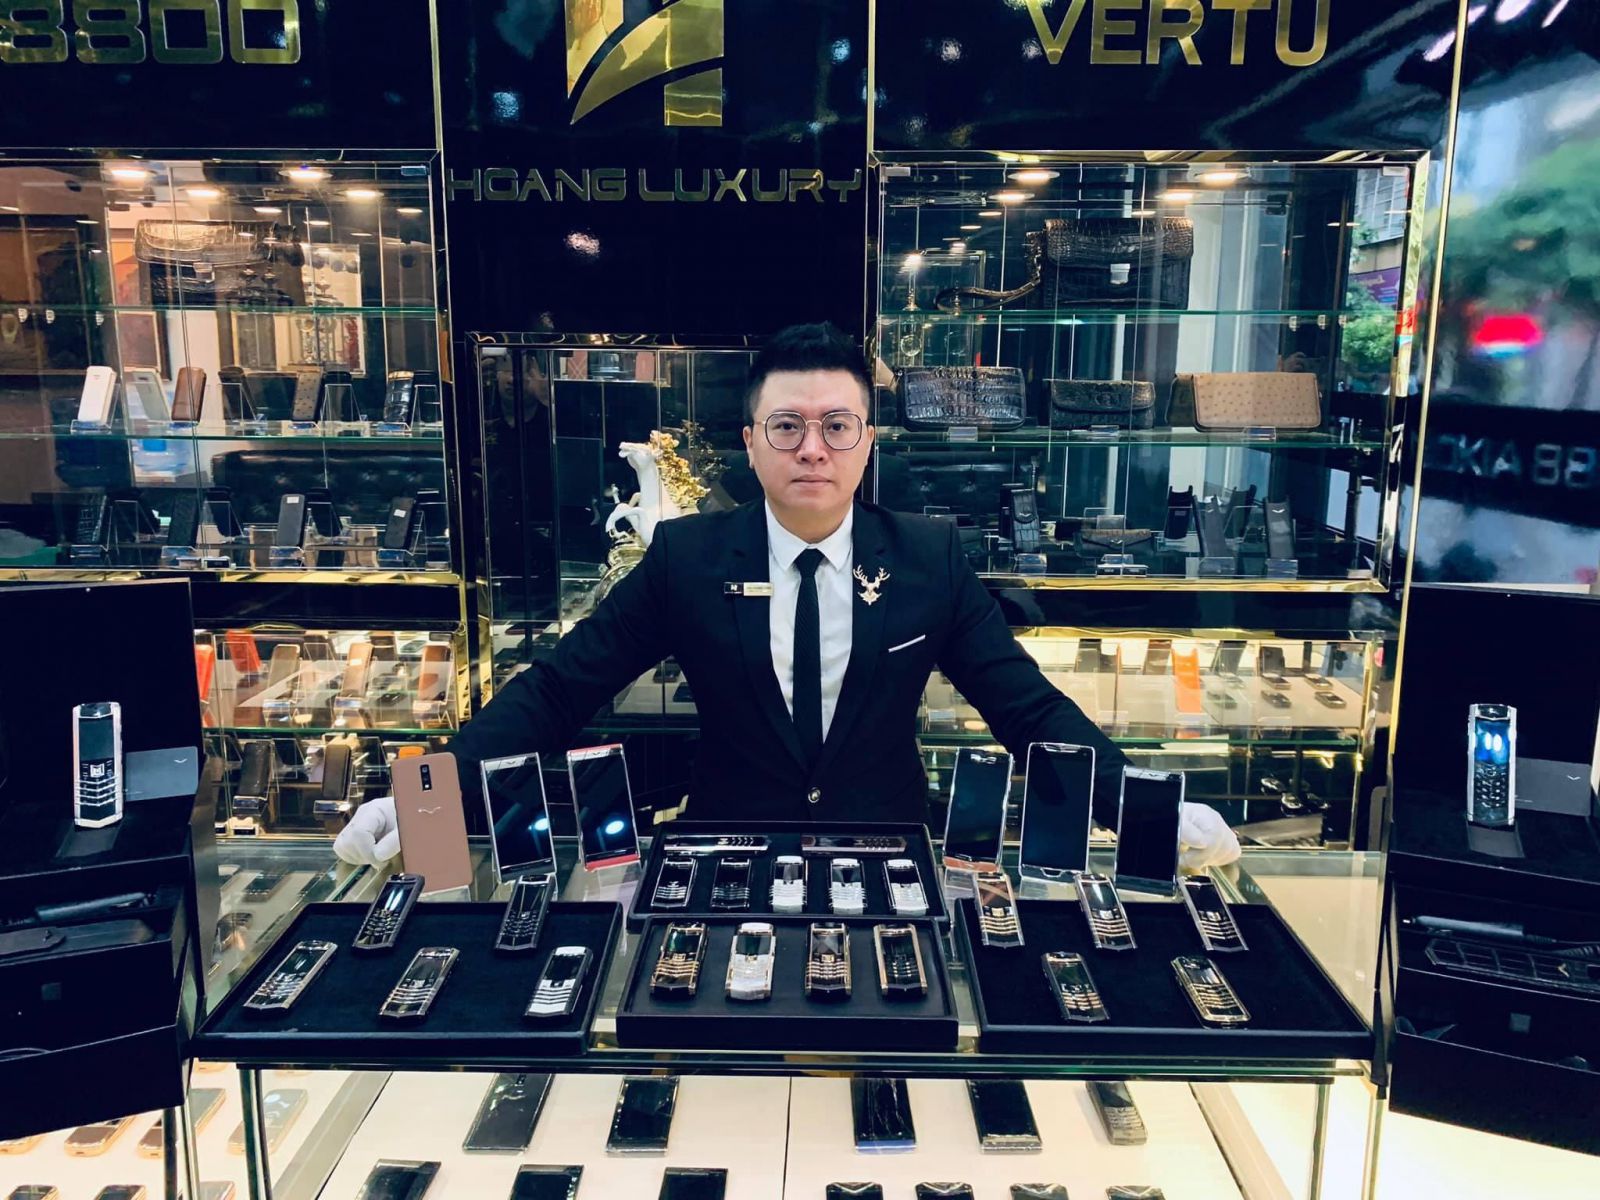 Hoàng Luxury - đơn vị uy tín phân phối Vertu hàng đầu Việt Nam